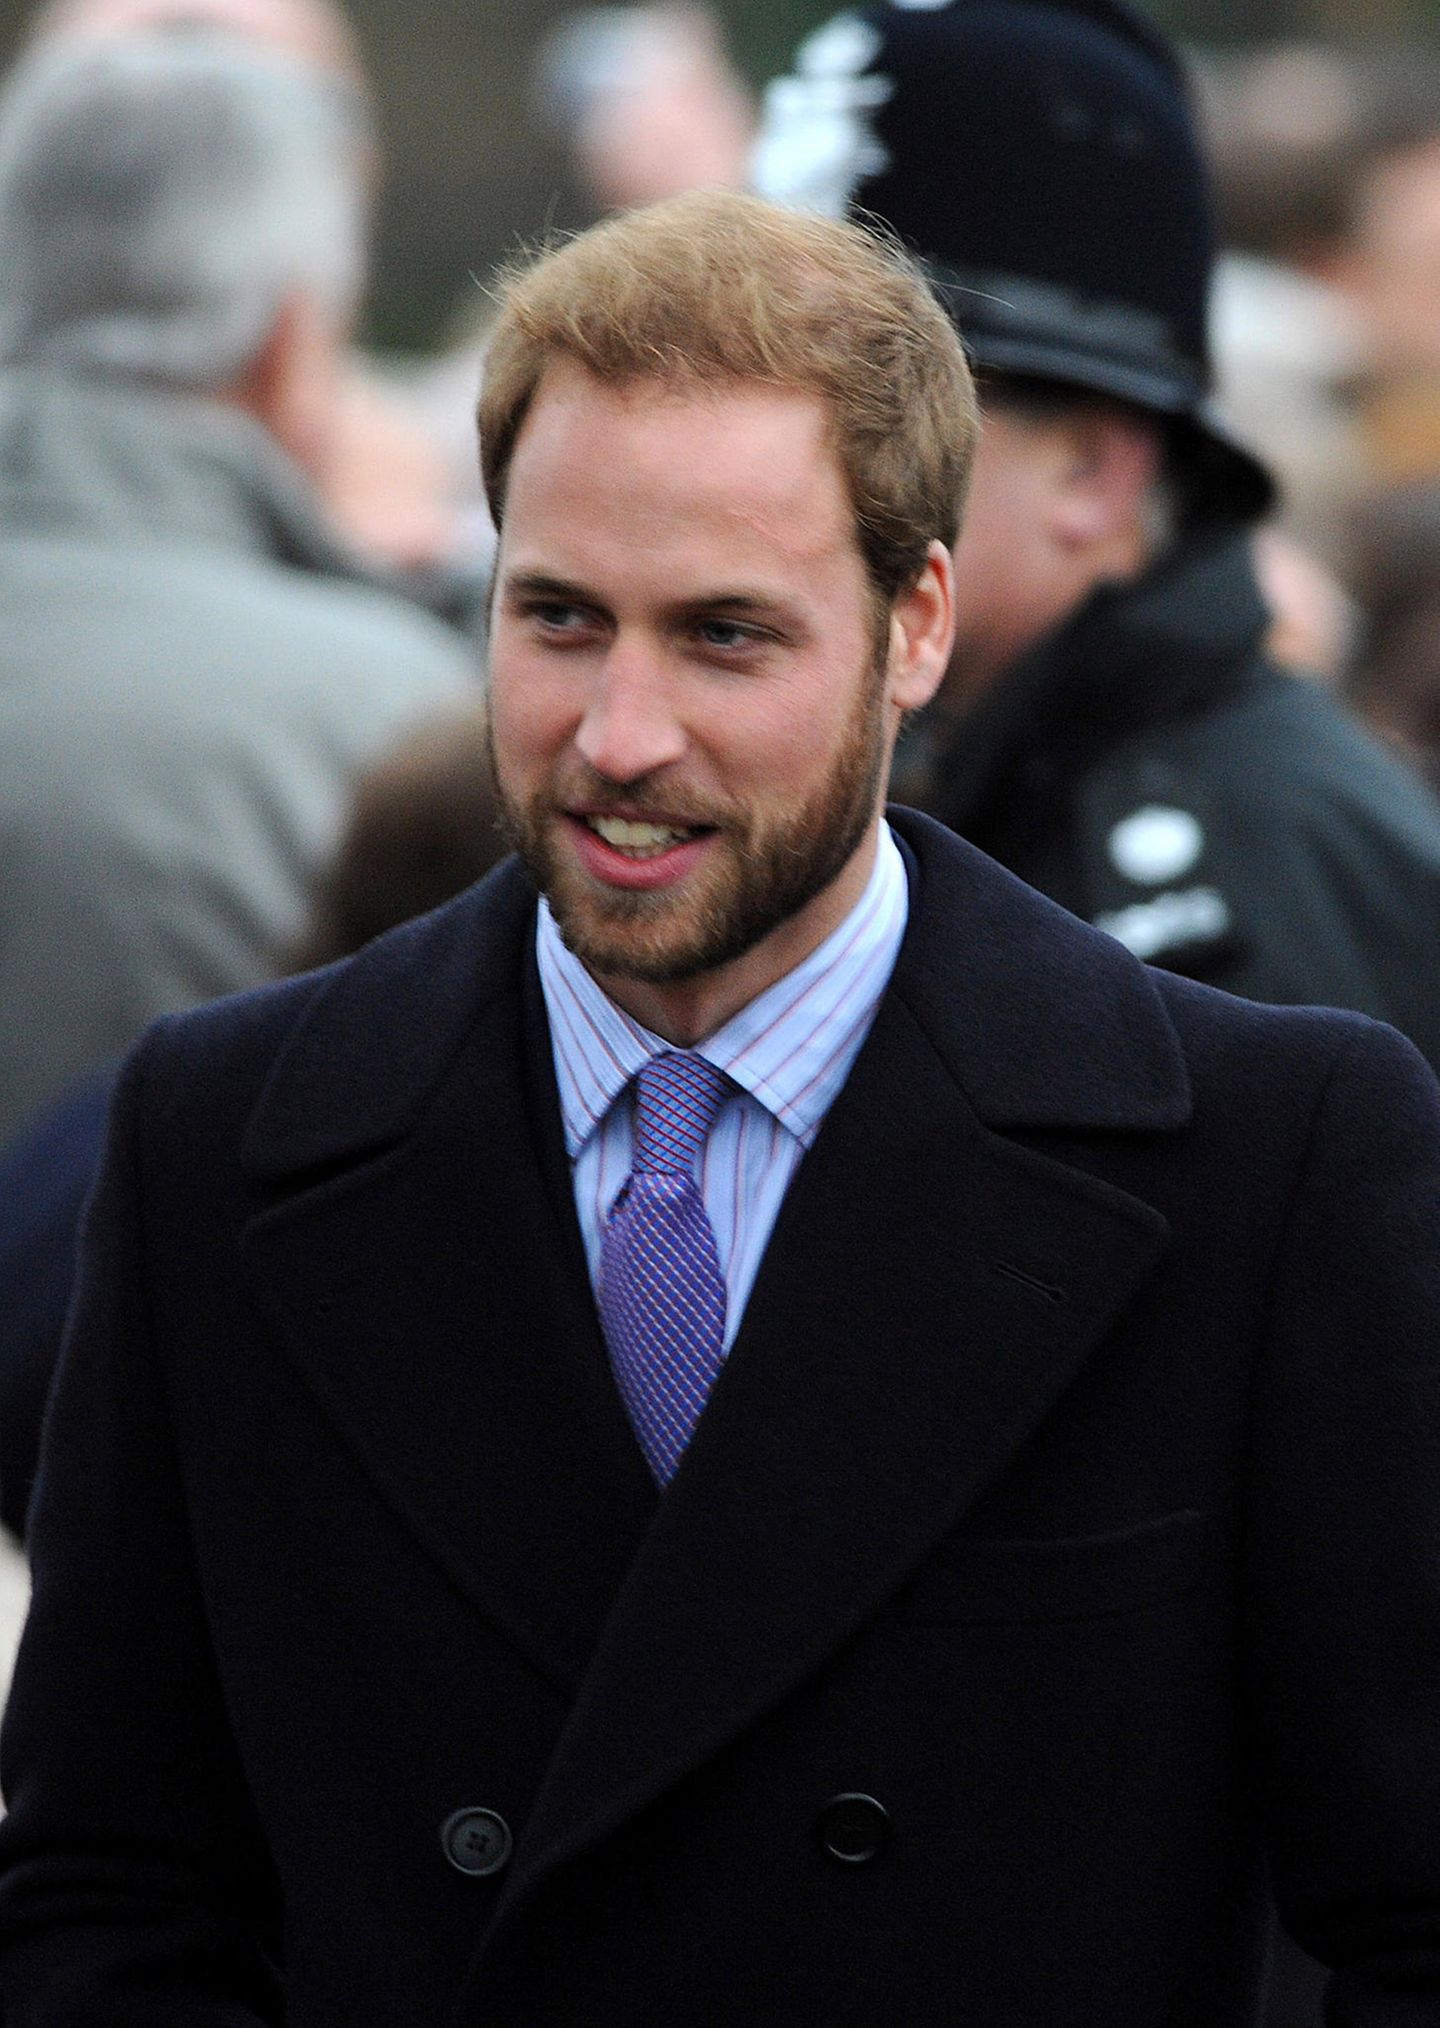 Promis mit und ohne Bart: Prinz William mit Bart